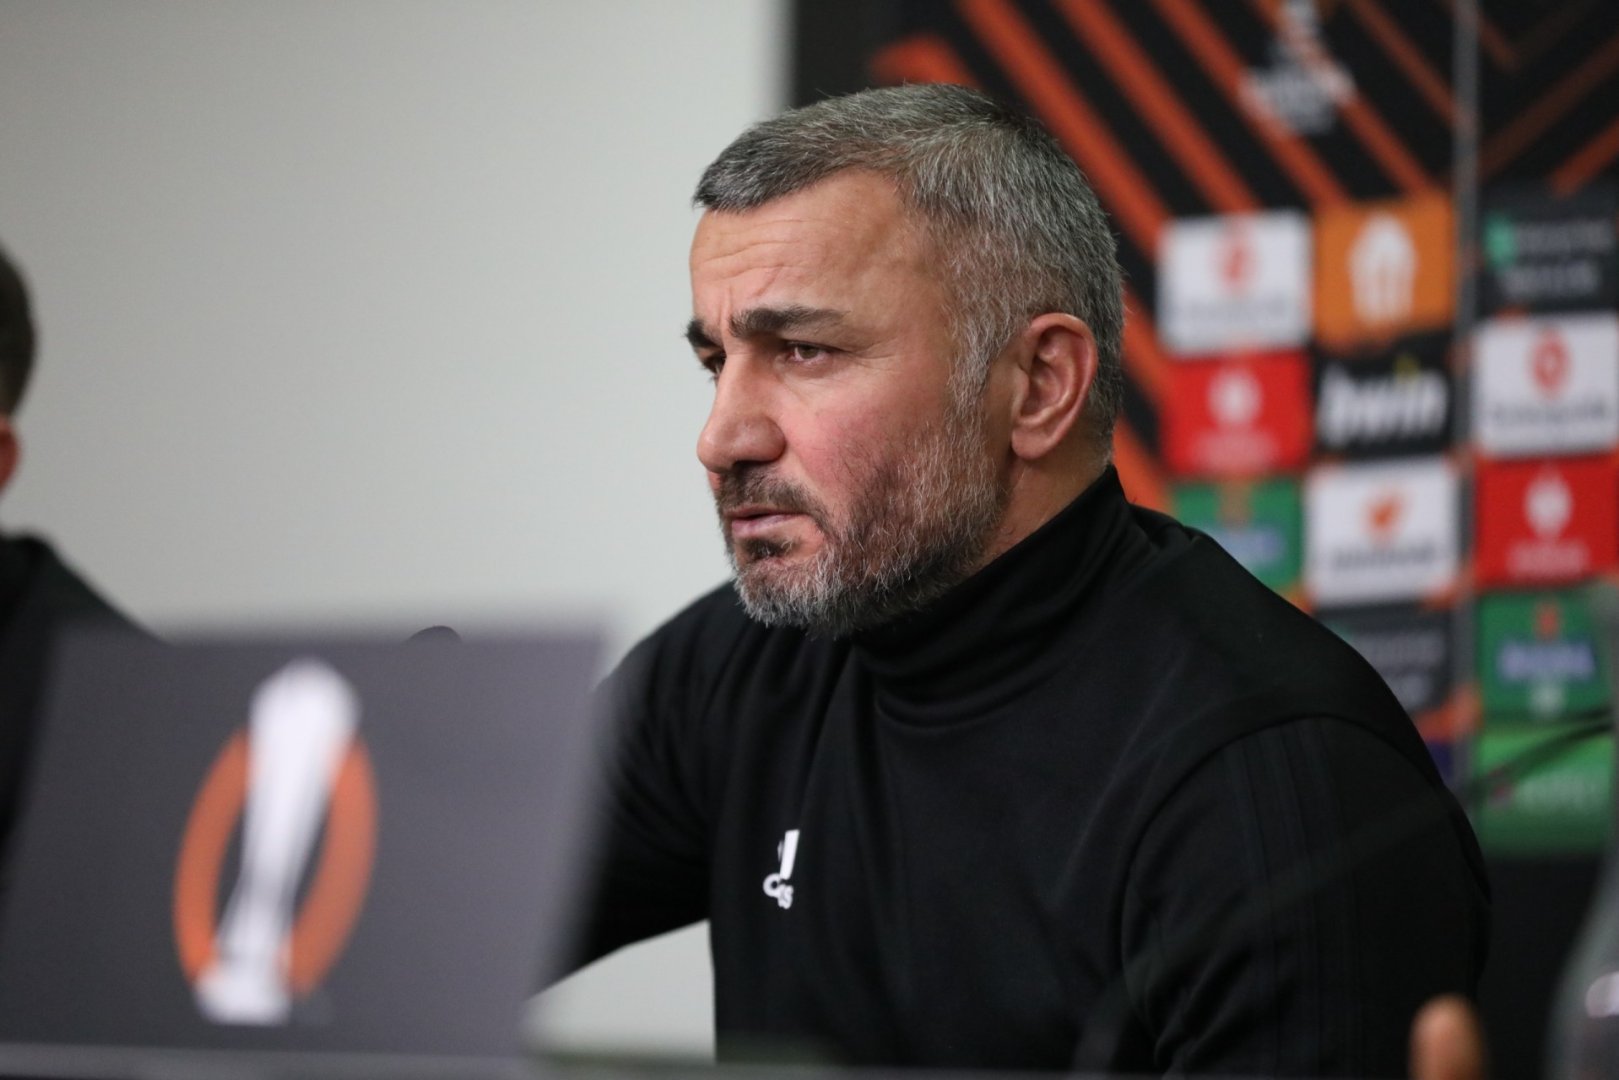 Even though we loose, team fight until end - Azerbaijan's Qarabag head coach